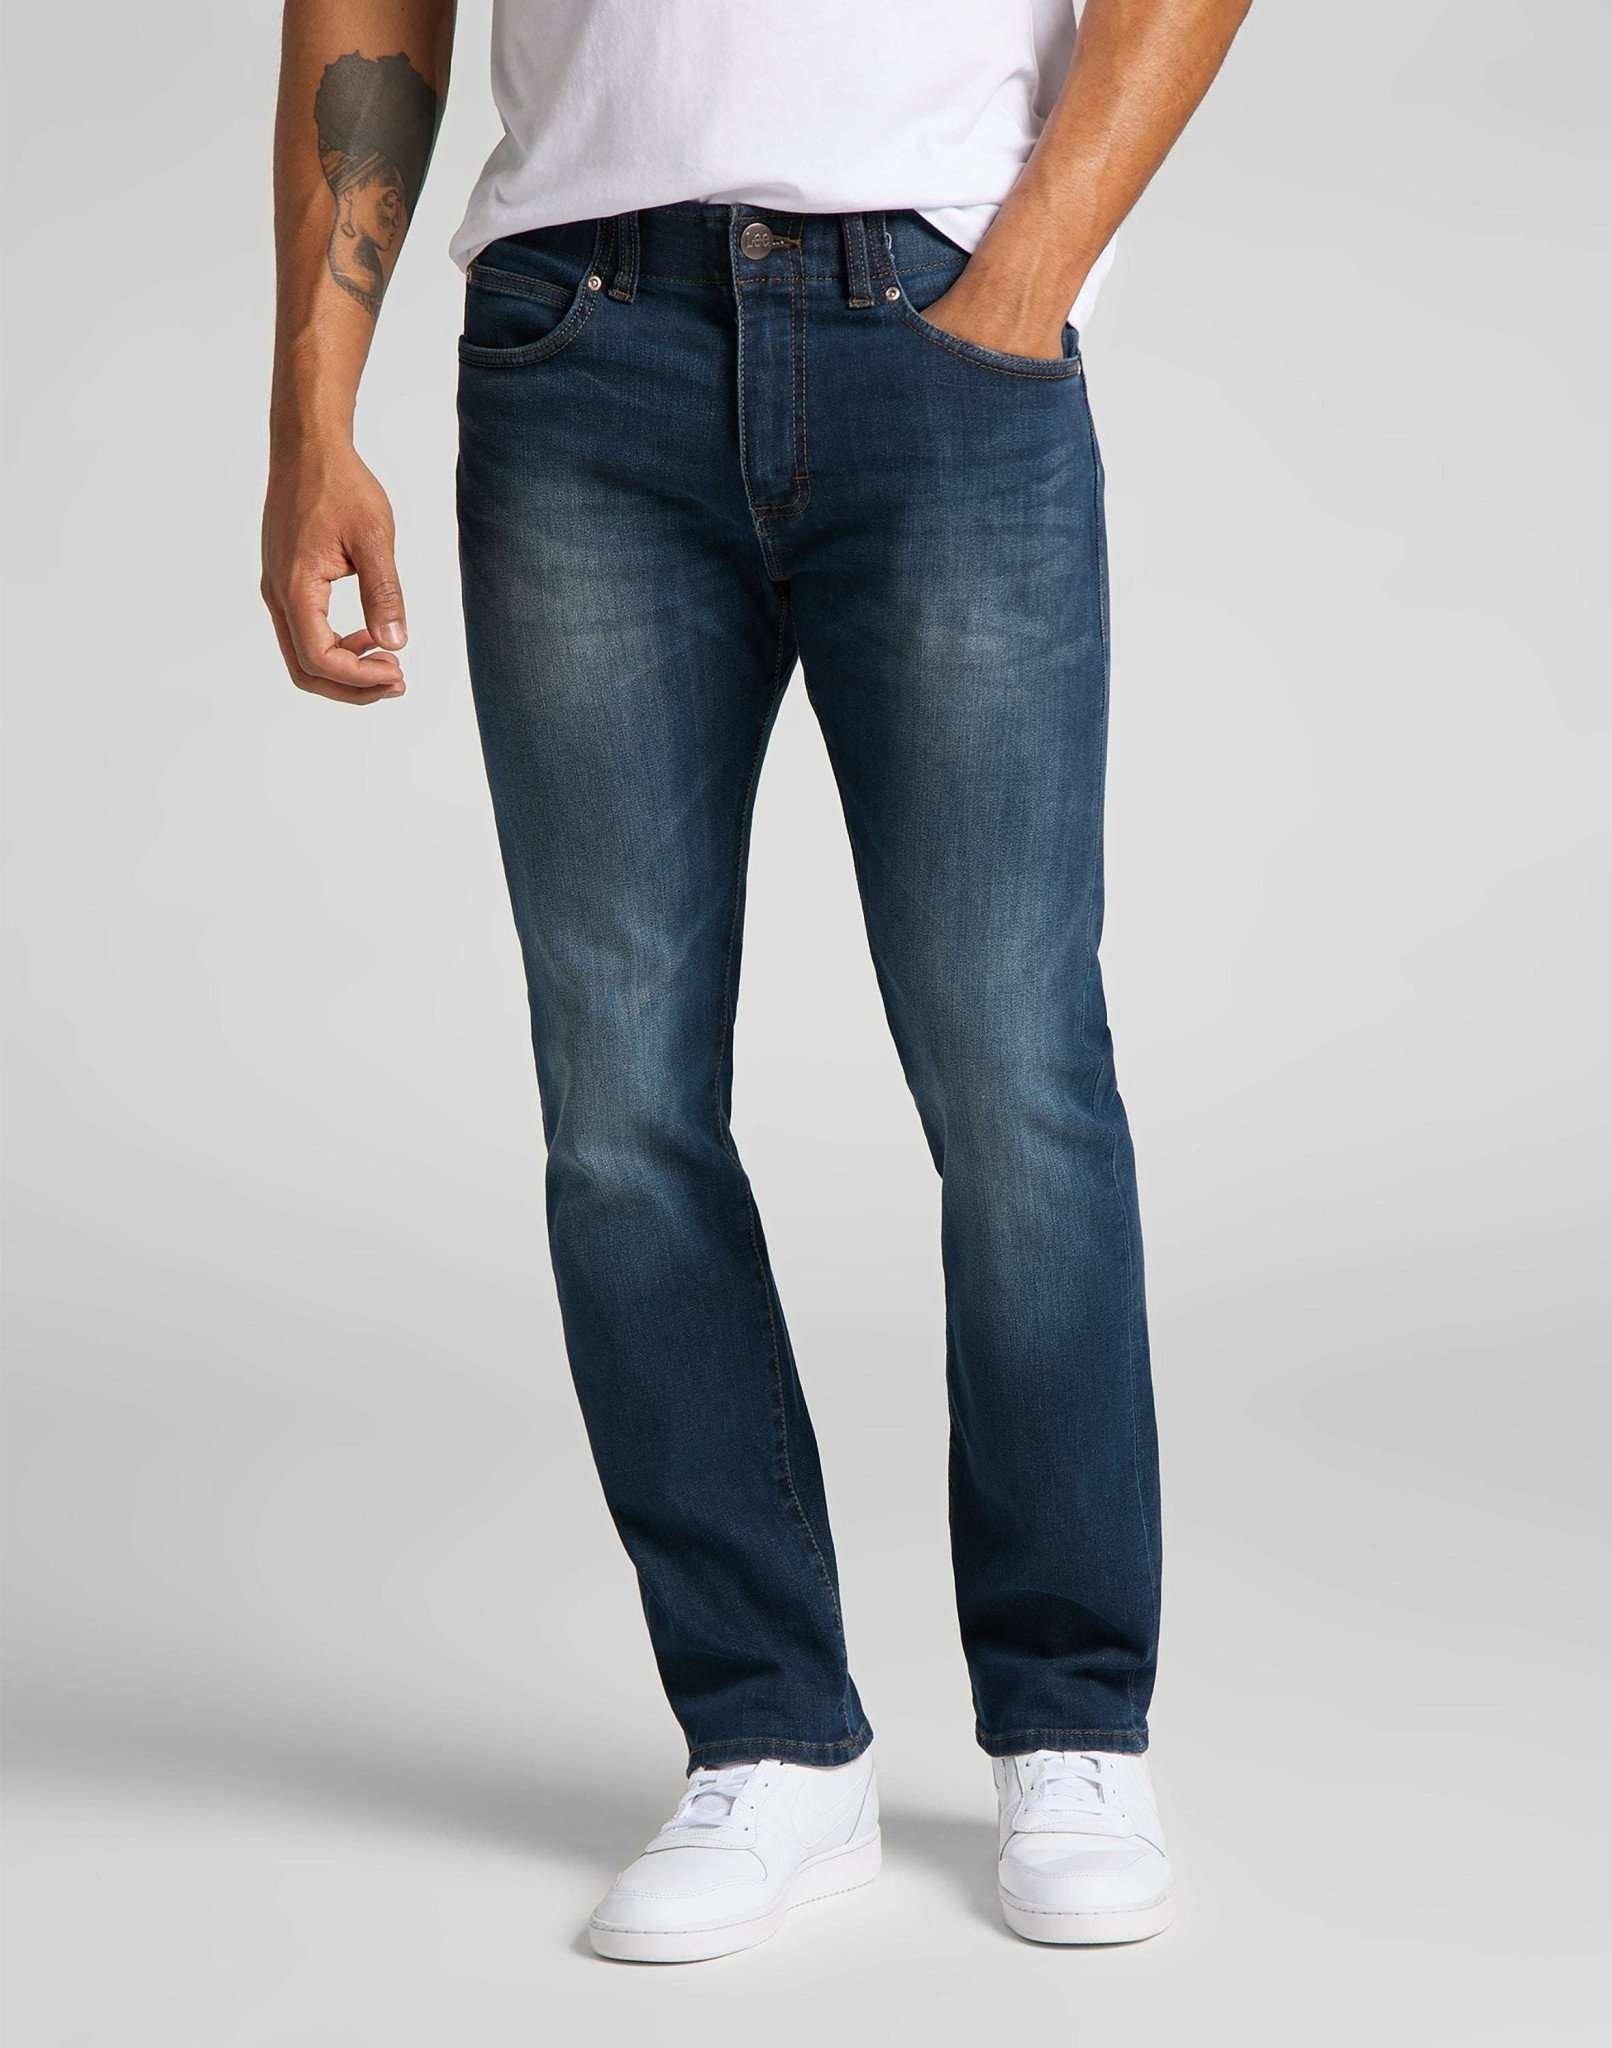 Jeans Slim Fit Mvp Herren Blau Denim L30/W29 von Lee